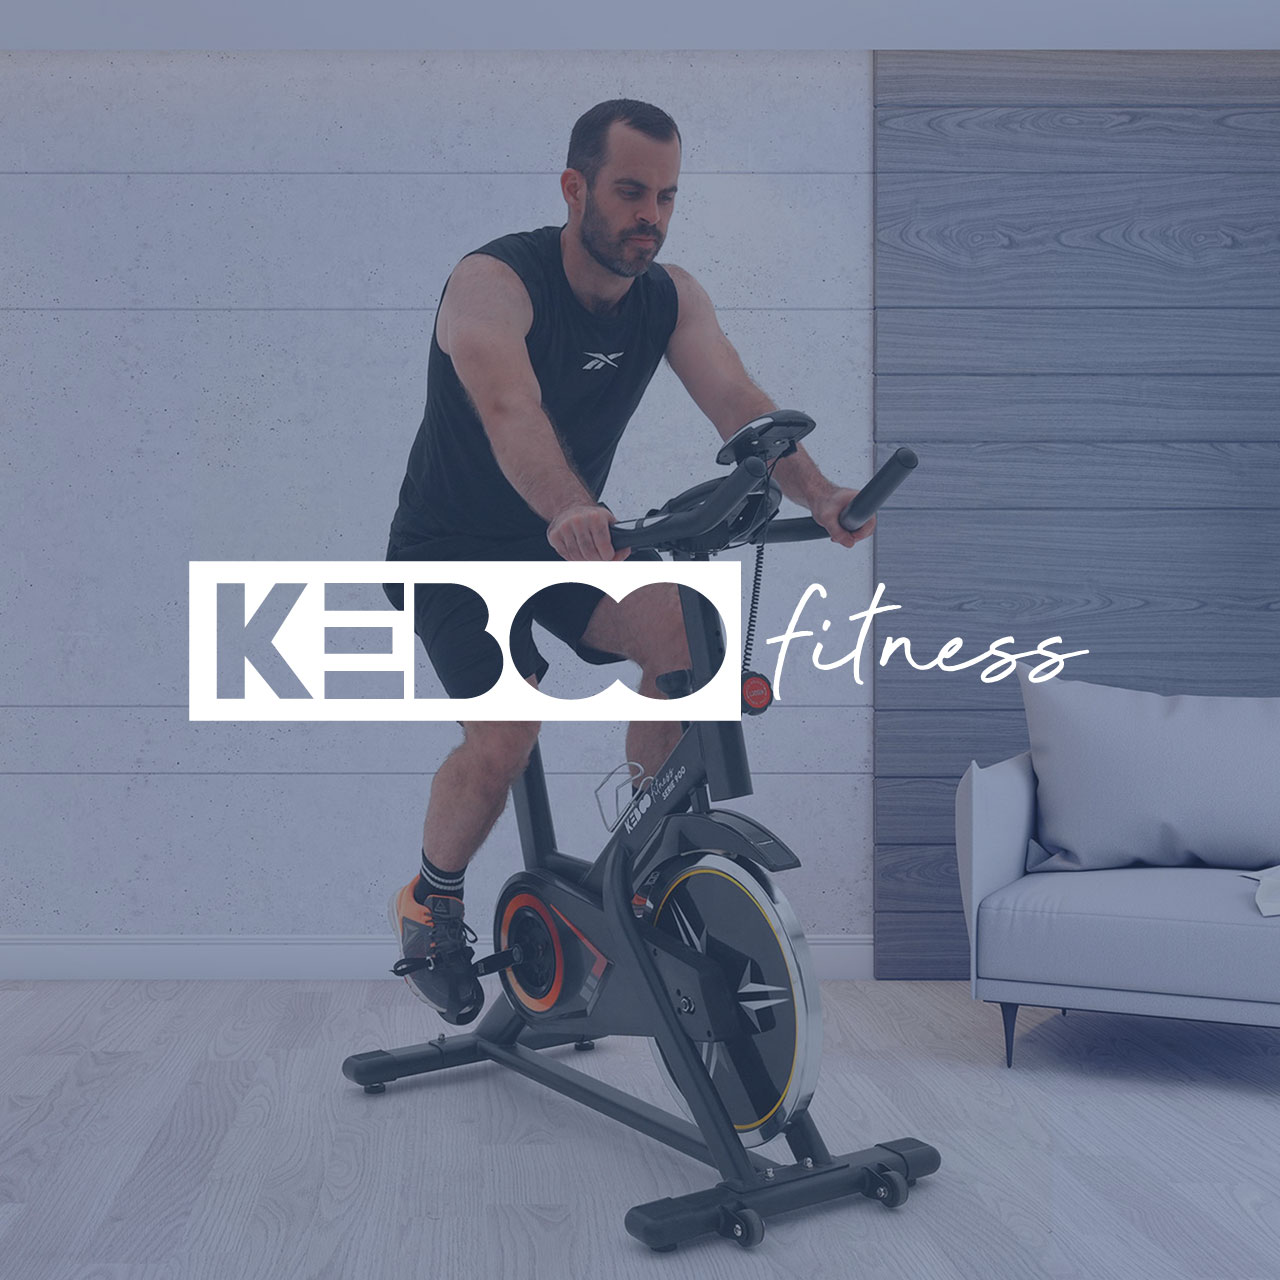 Keboo: get fit, get fun